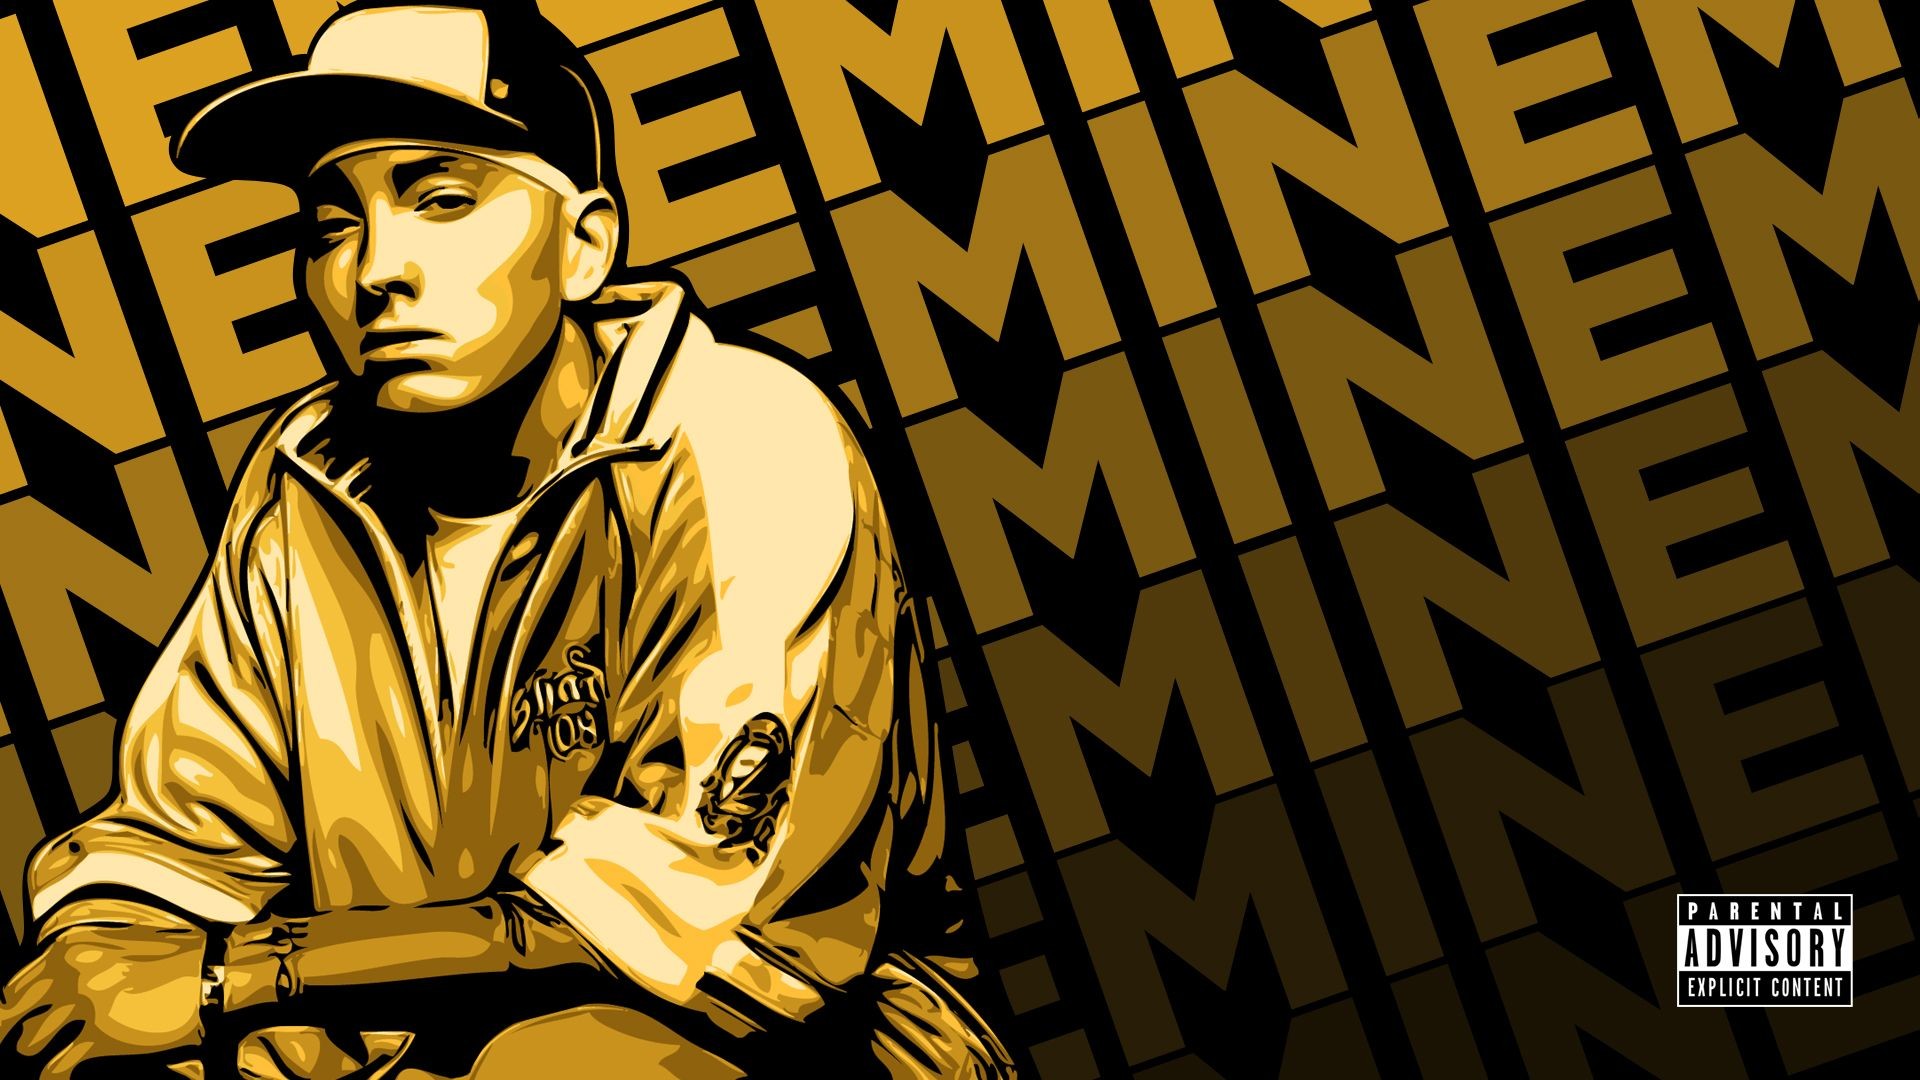 1920x1080 pic new posts Eminem Wallpaper Hd | HD Wallpapers | Pinterest | Eminem, Hd  wallpaper and Wallpaper